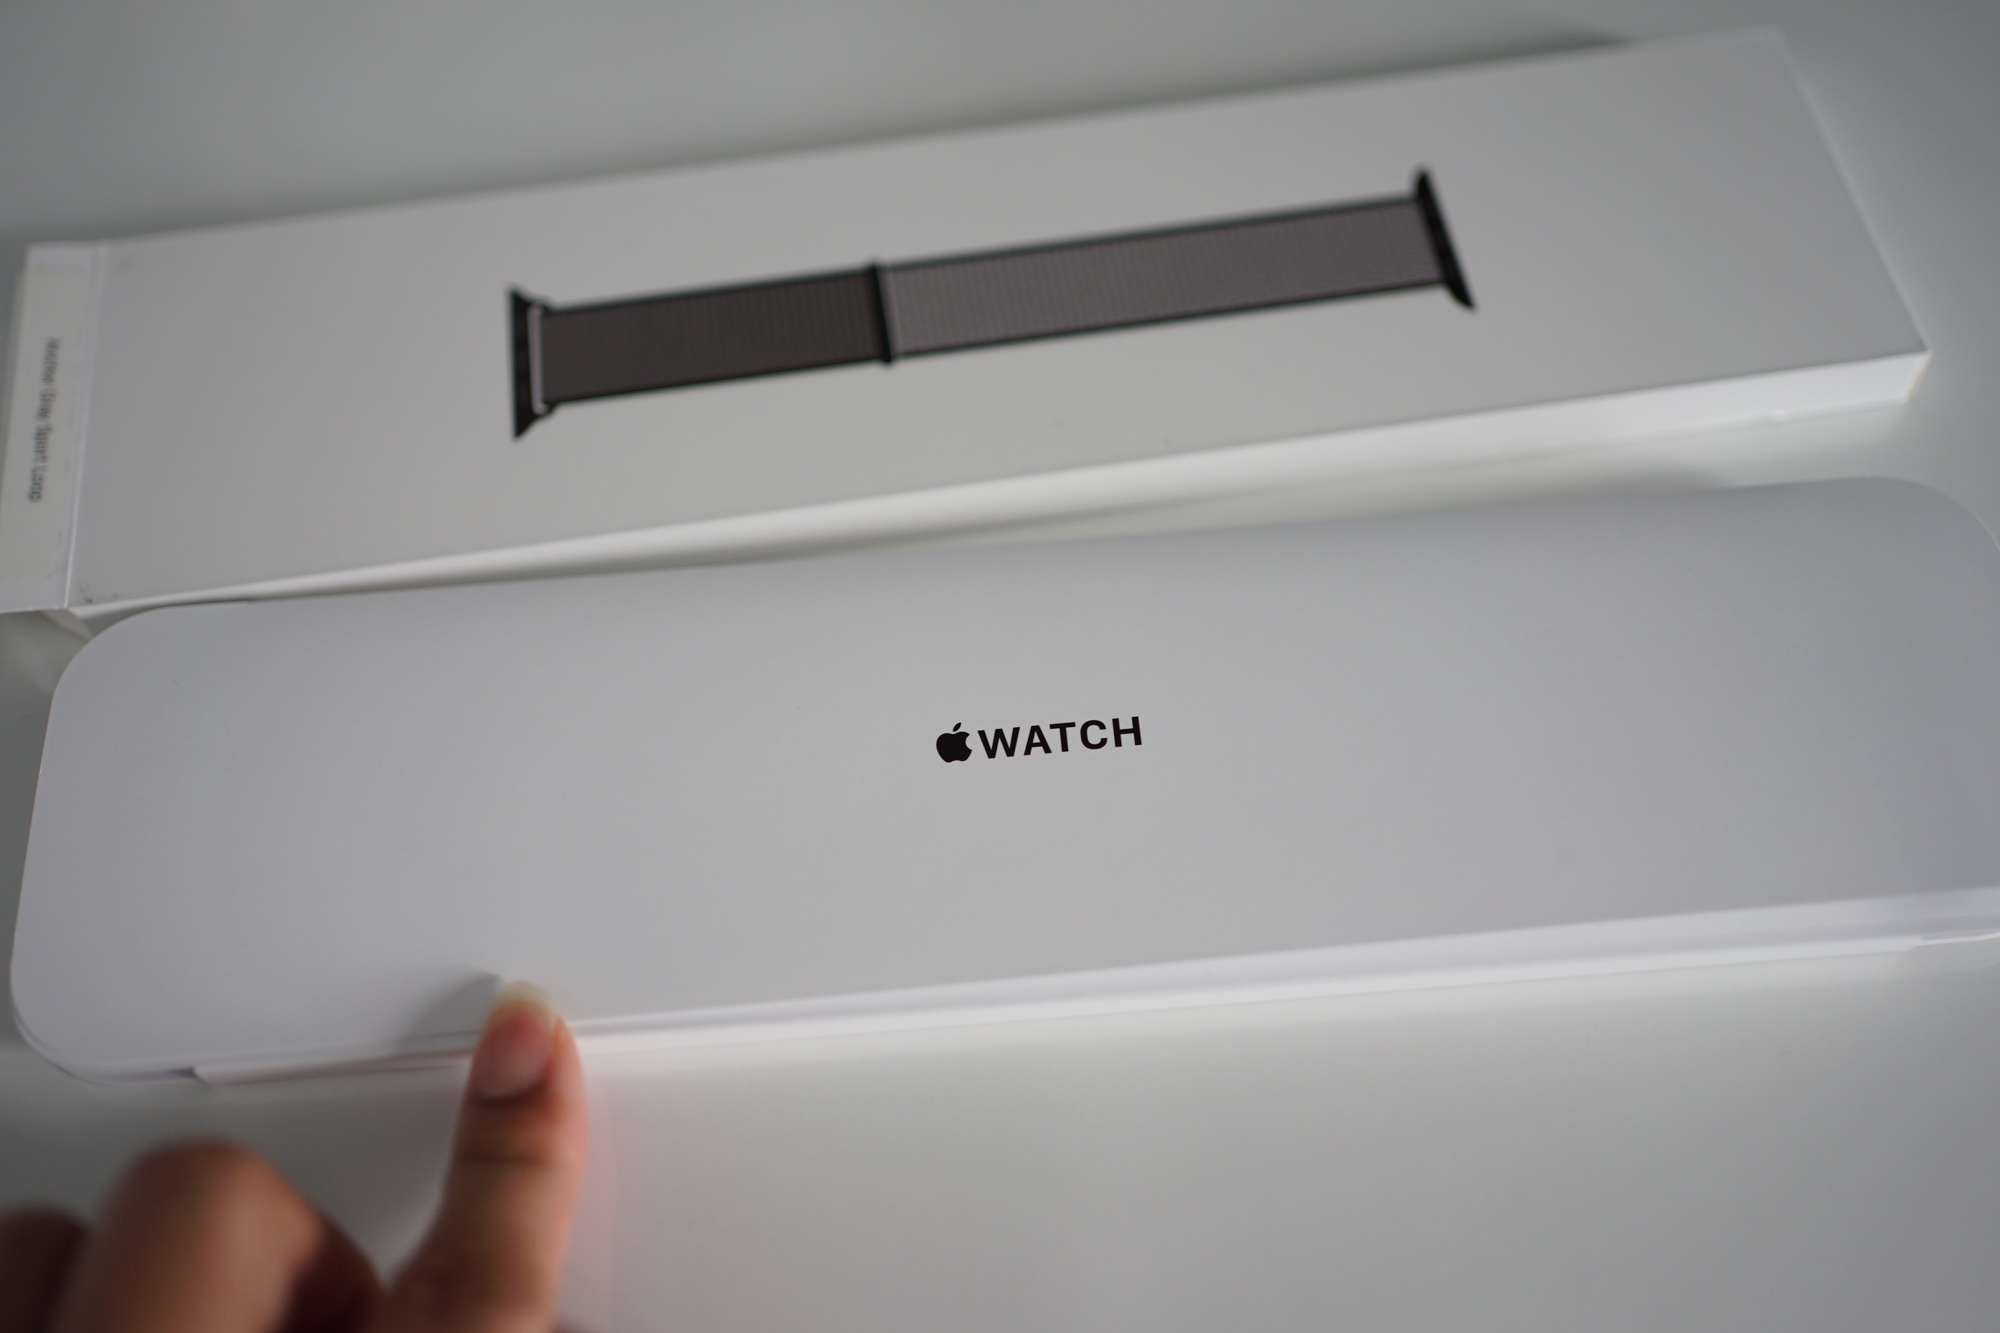 รีวิว Apple Watch Series 5 Edition